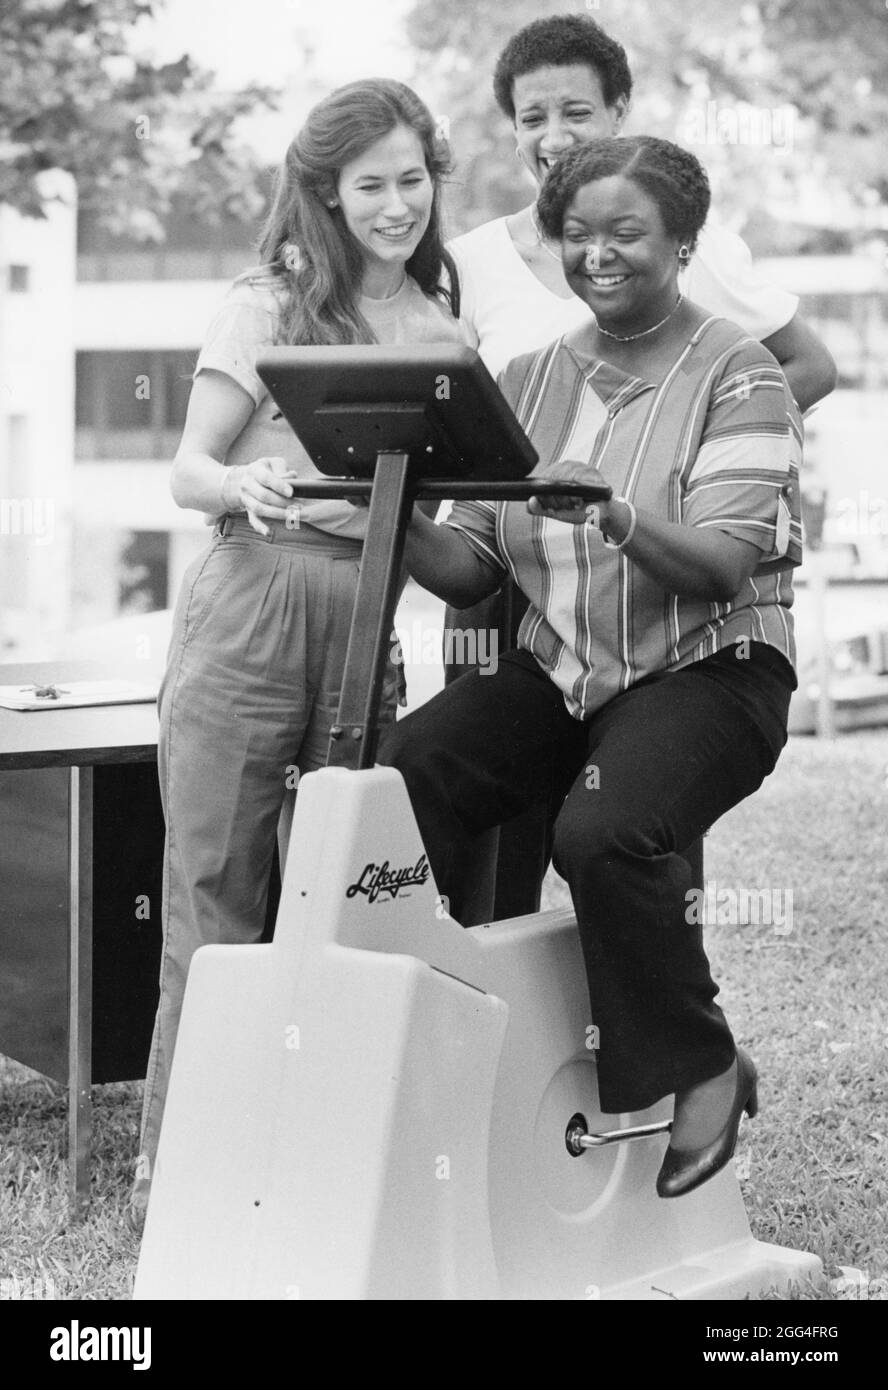 Austin Texas USA, vers 1990: La femme noire vérifie son rythme cardiaque tout en faisant un vélo d'exercice de cycle de vie lors d'une démonstration parrainée par l'hôpital dans un salon de santé dans un parc de la ville. ©Bob Daemmrich Banque D'Images